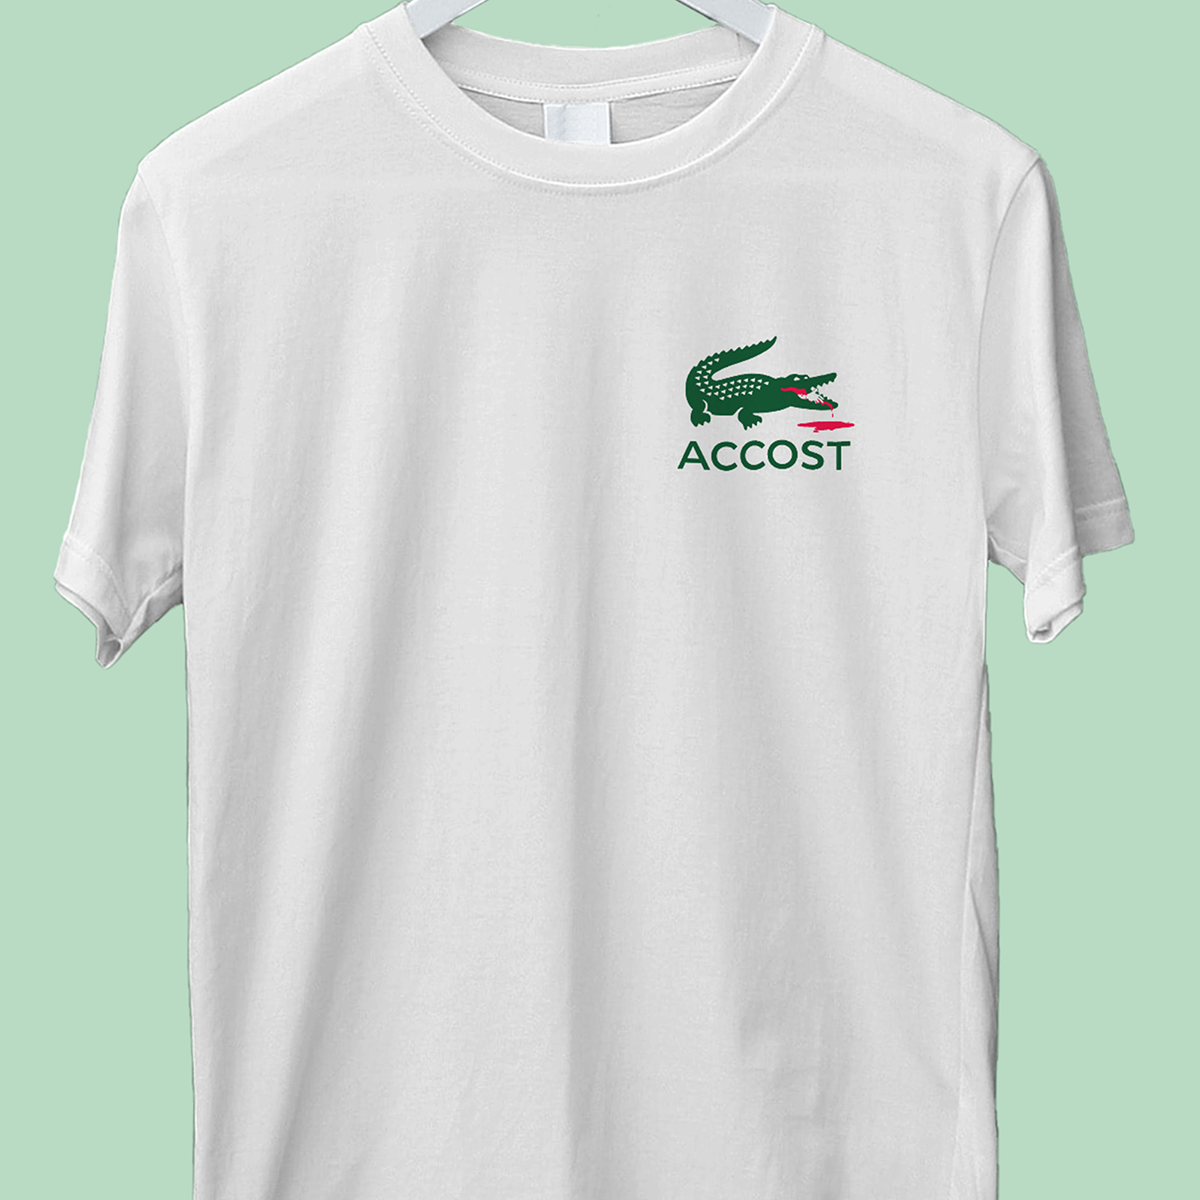 Accost Brand T-shirt